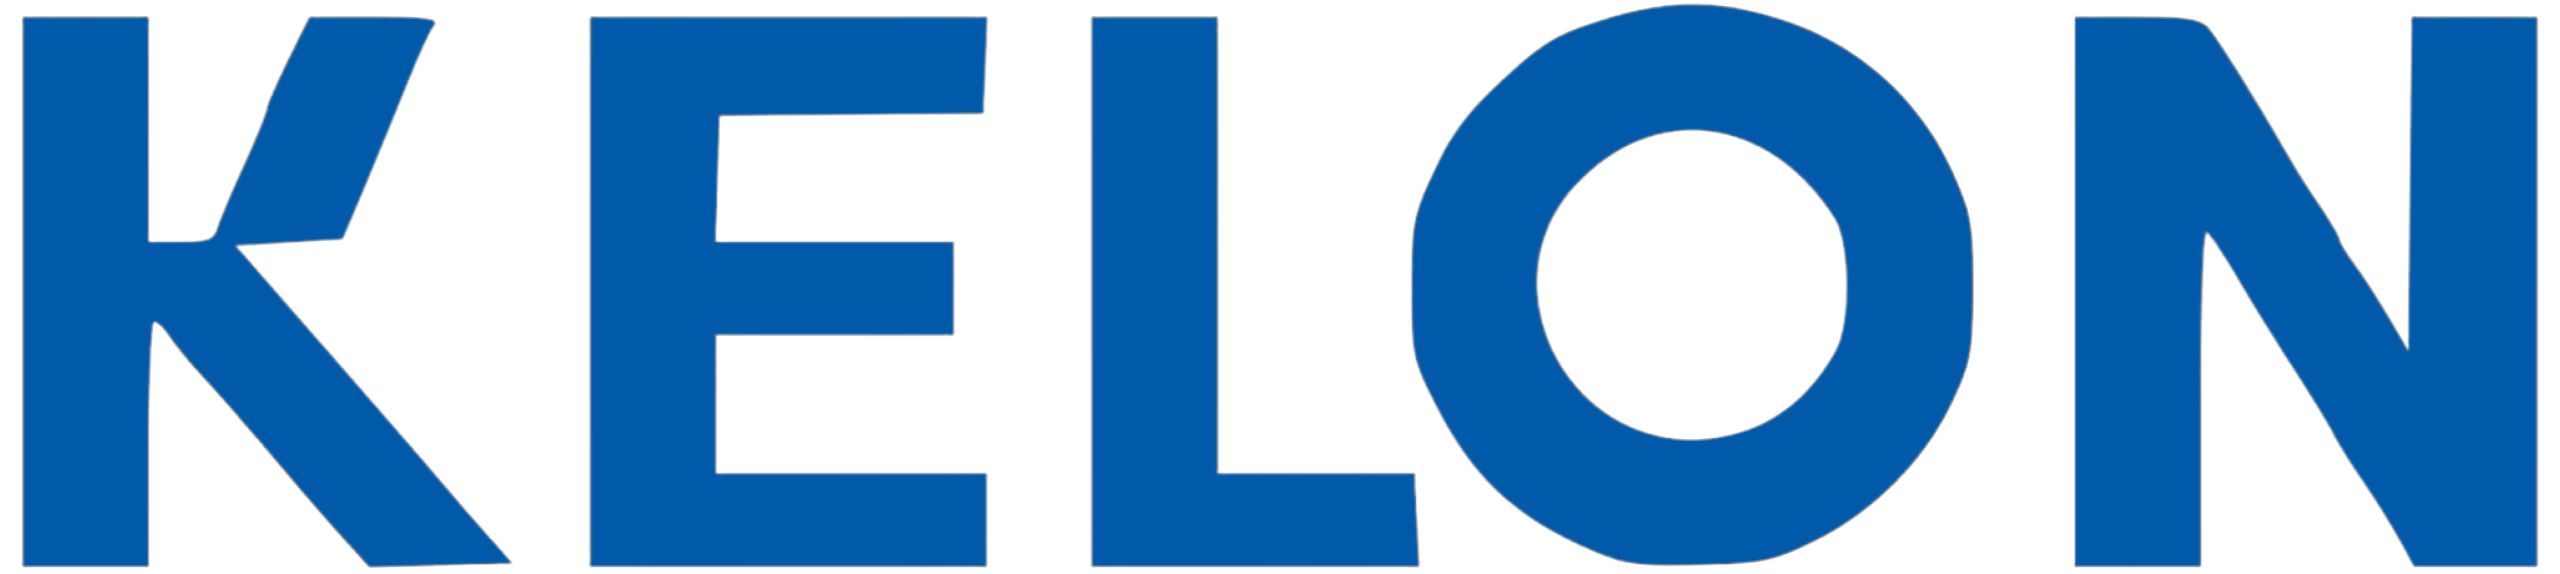 Kelon Logo